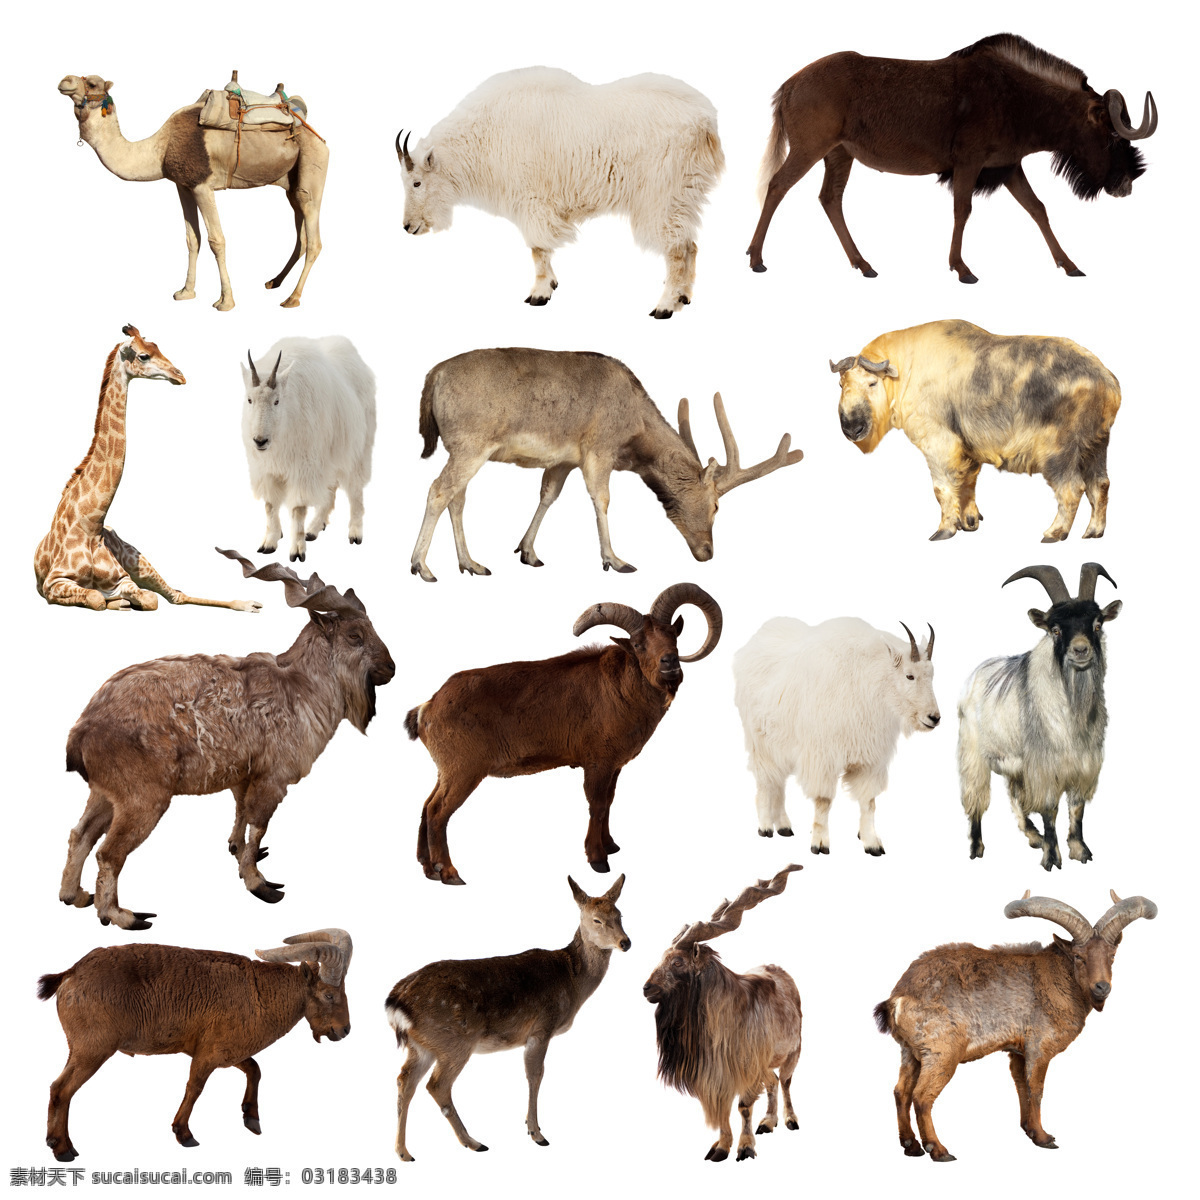 大 草原 动物 合 辑 大草原 羚羊 长颈鹿 骆驼 牦牛 陆地动物 生物世界 白色